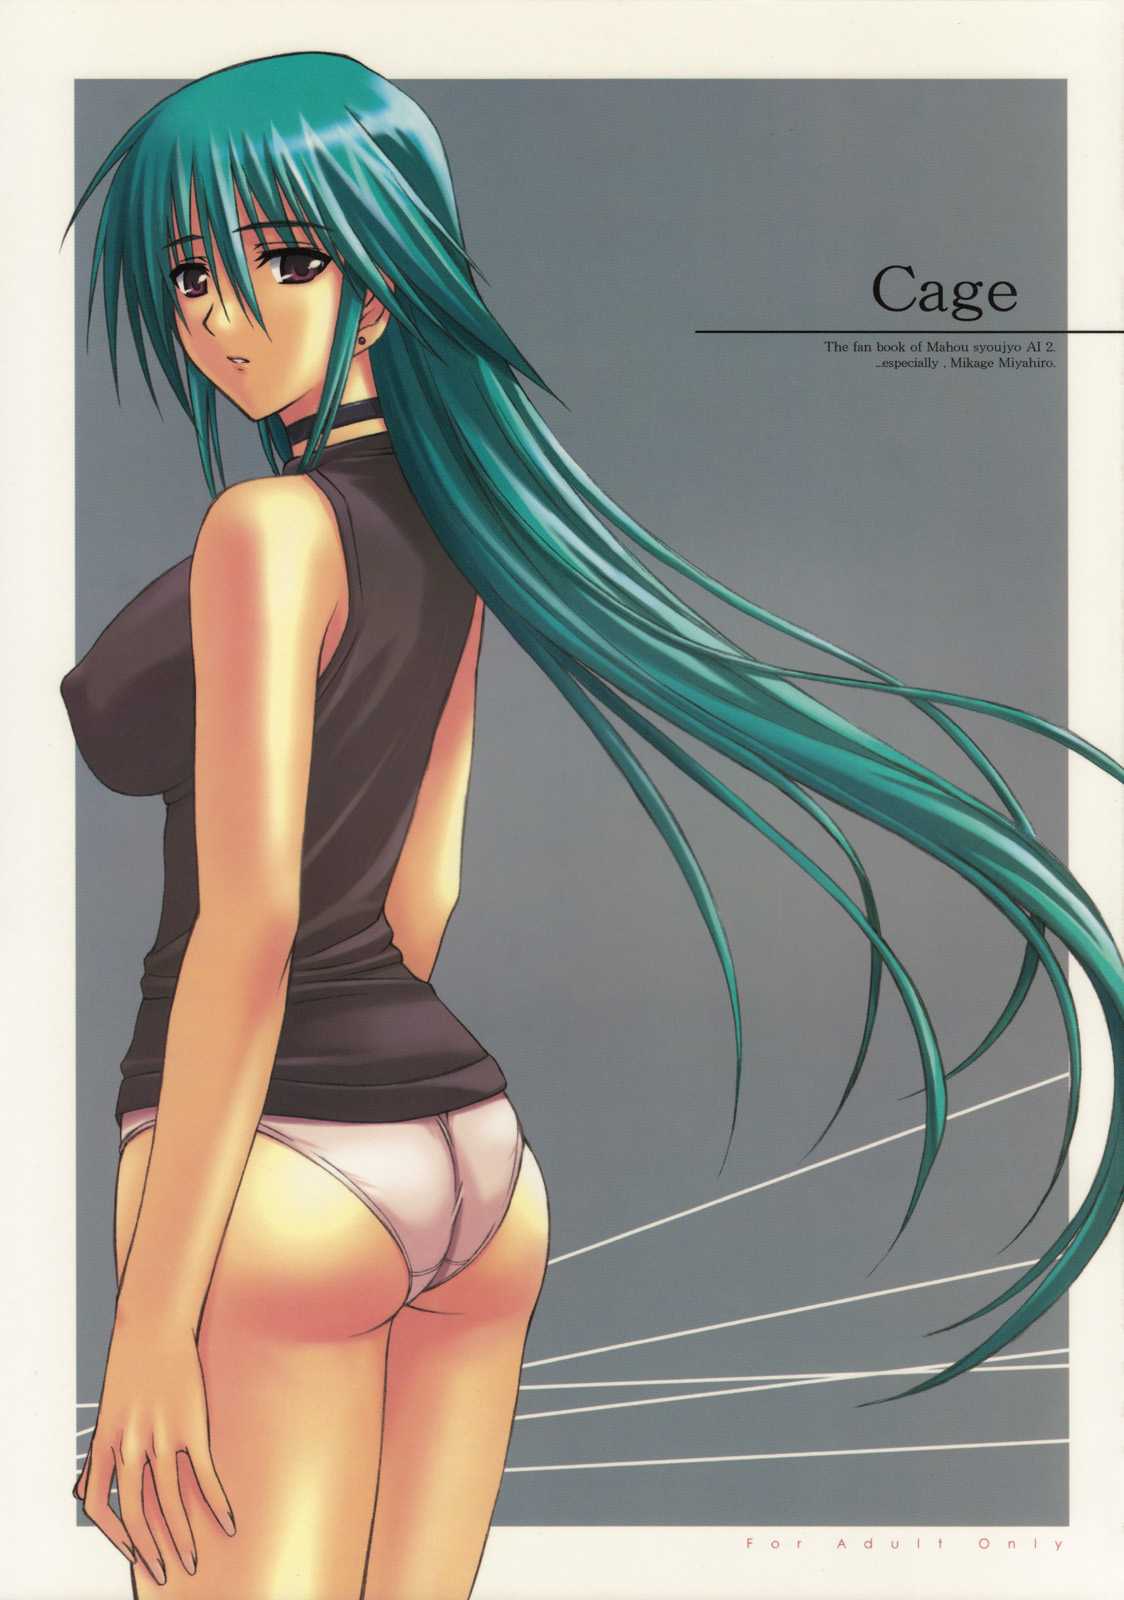 [Type-G] Cage (Mahou Shoujo Ai 2) 